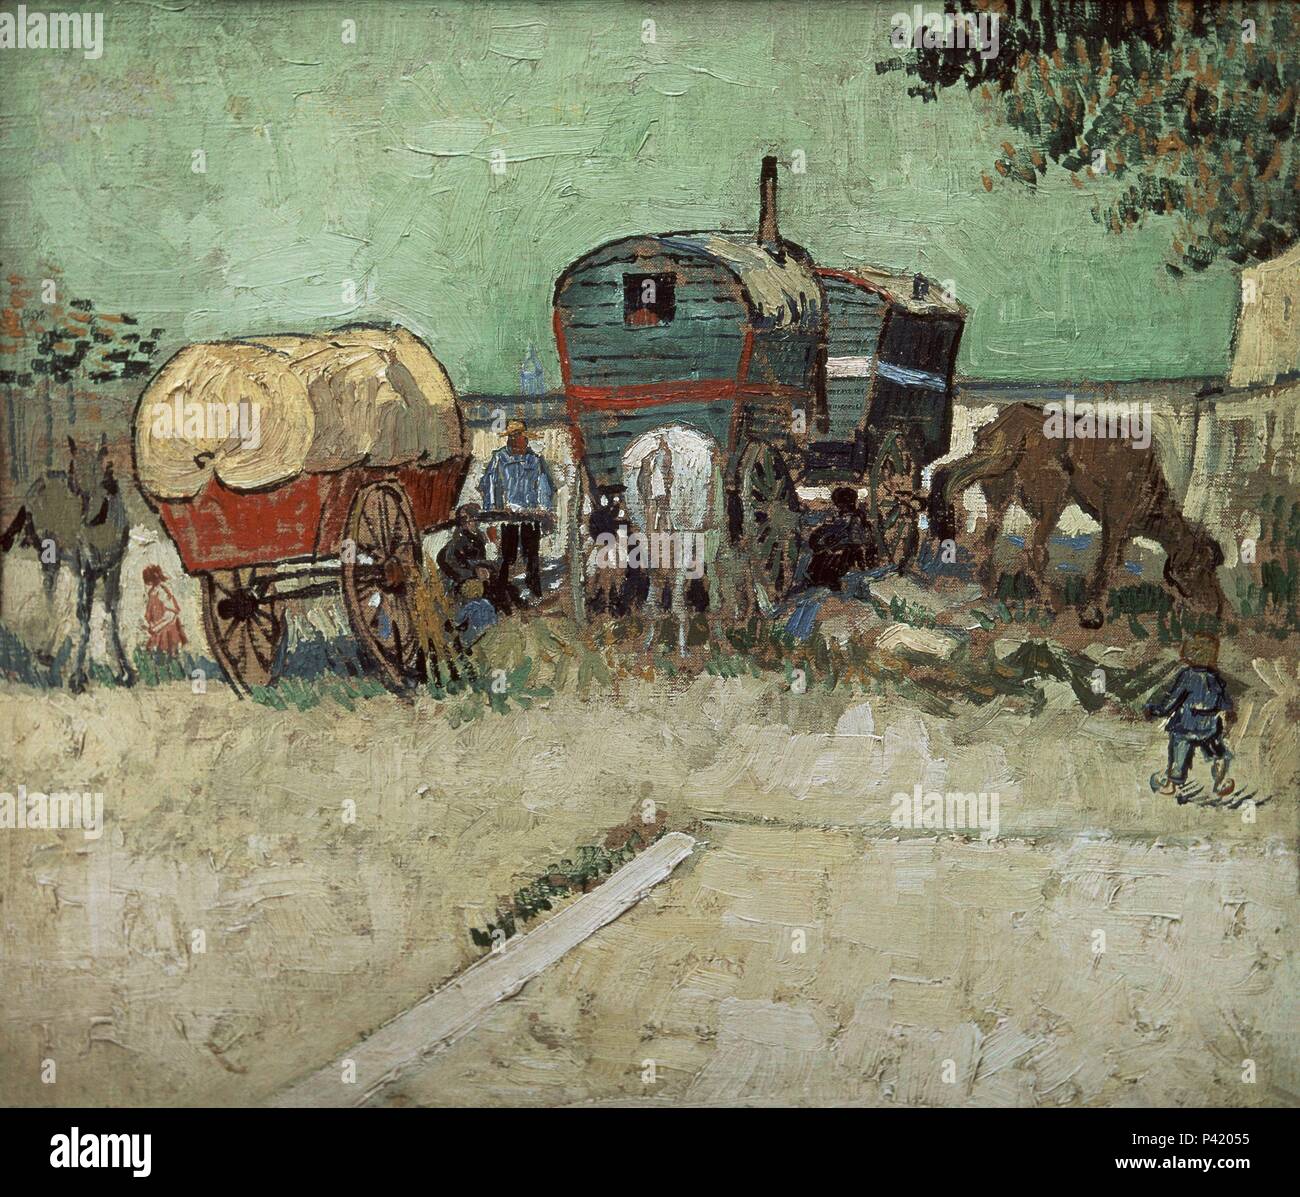 Die Wohnwagen, Gypsy Encampment in der Nähe von Arles - 1888 - 45 x 51 cm - Öl auf Leinwand. Autor: Vincent van Gogh (1853-1890). Lage: Musee D'Orsay, Frankreich. Auch als: CAMPAMENTO DE GITANOS CON CARROS - SONETO DE BAUDELAIRE 'LOS CARROMATOS" bekannt. Stockfoto